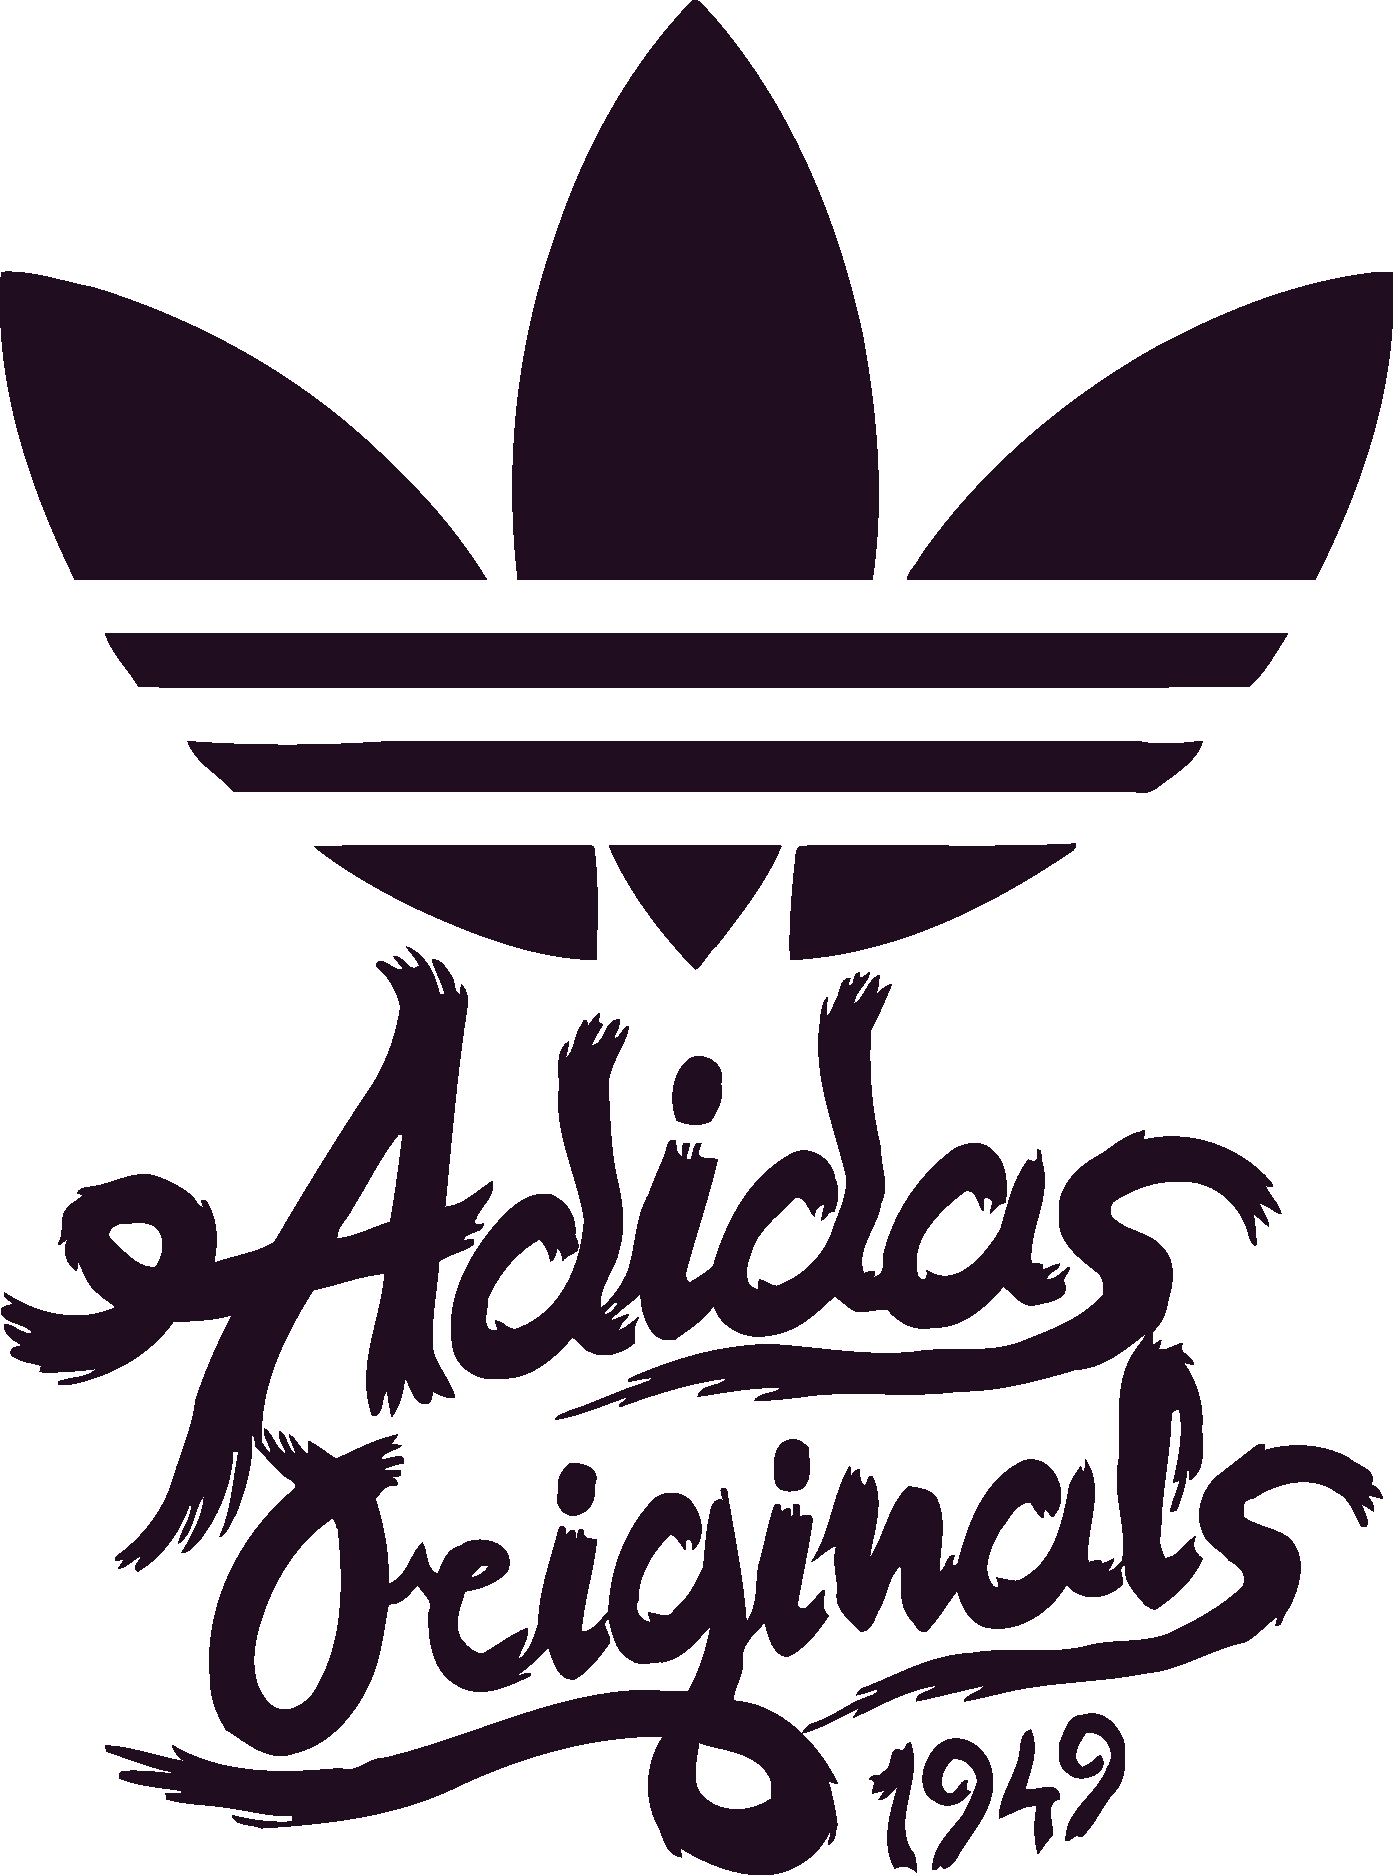 Adidas Originals Logo Png And Vector Logo Download - vrogue.co